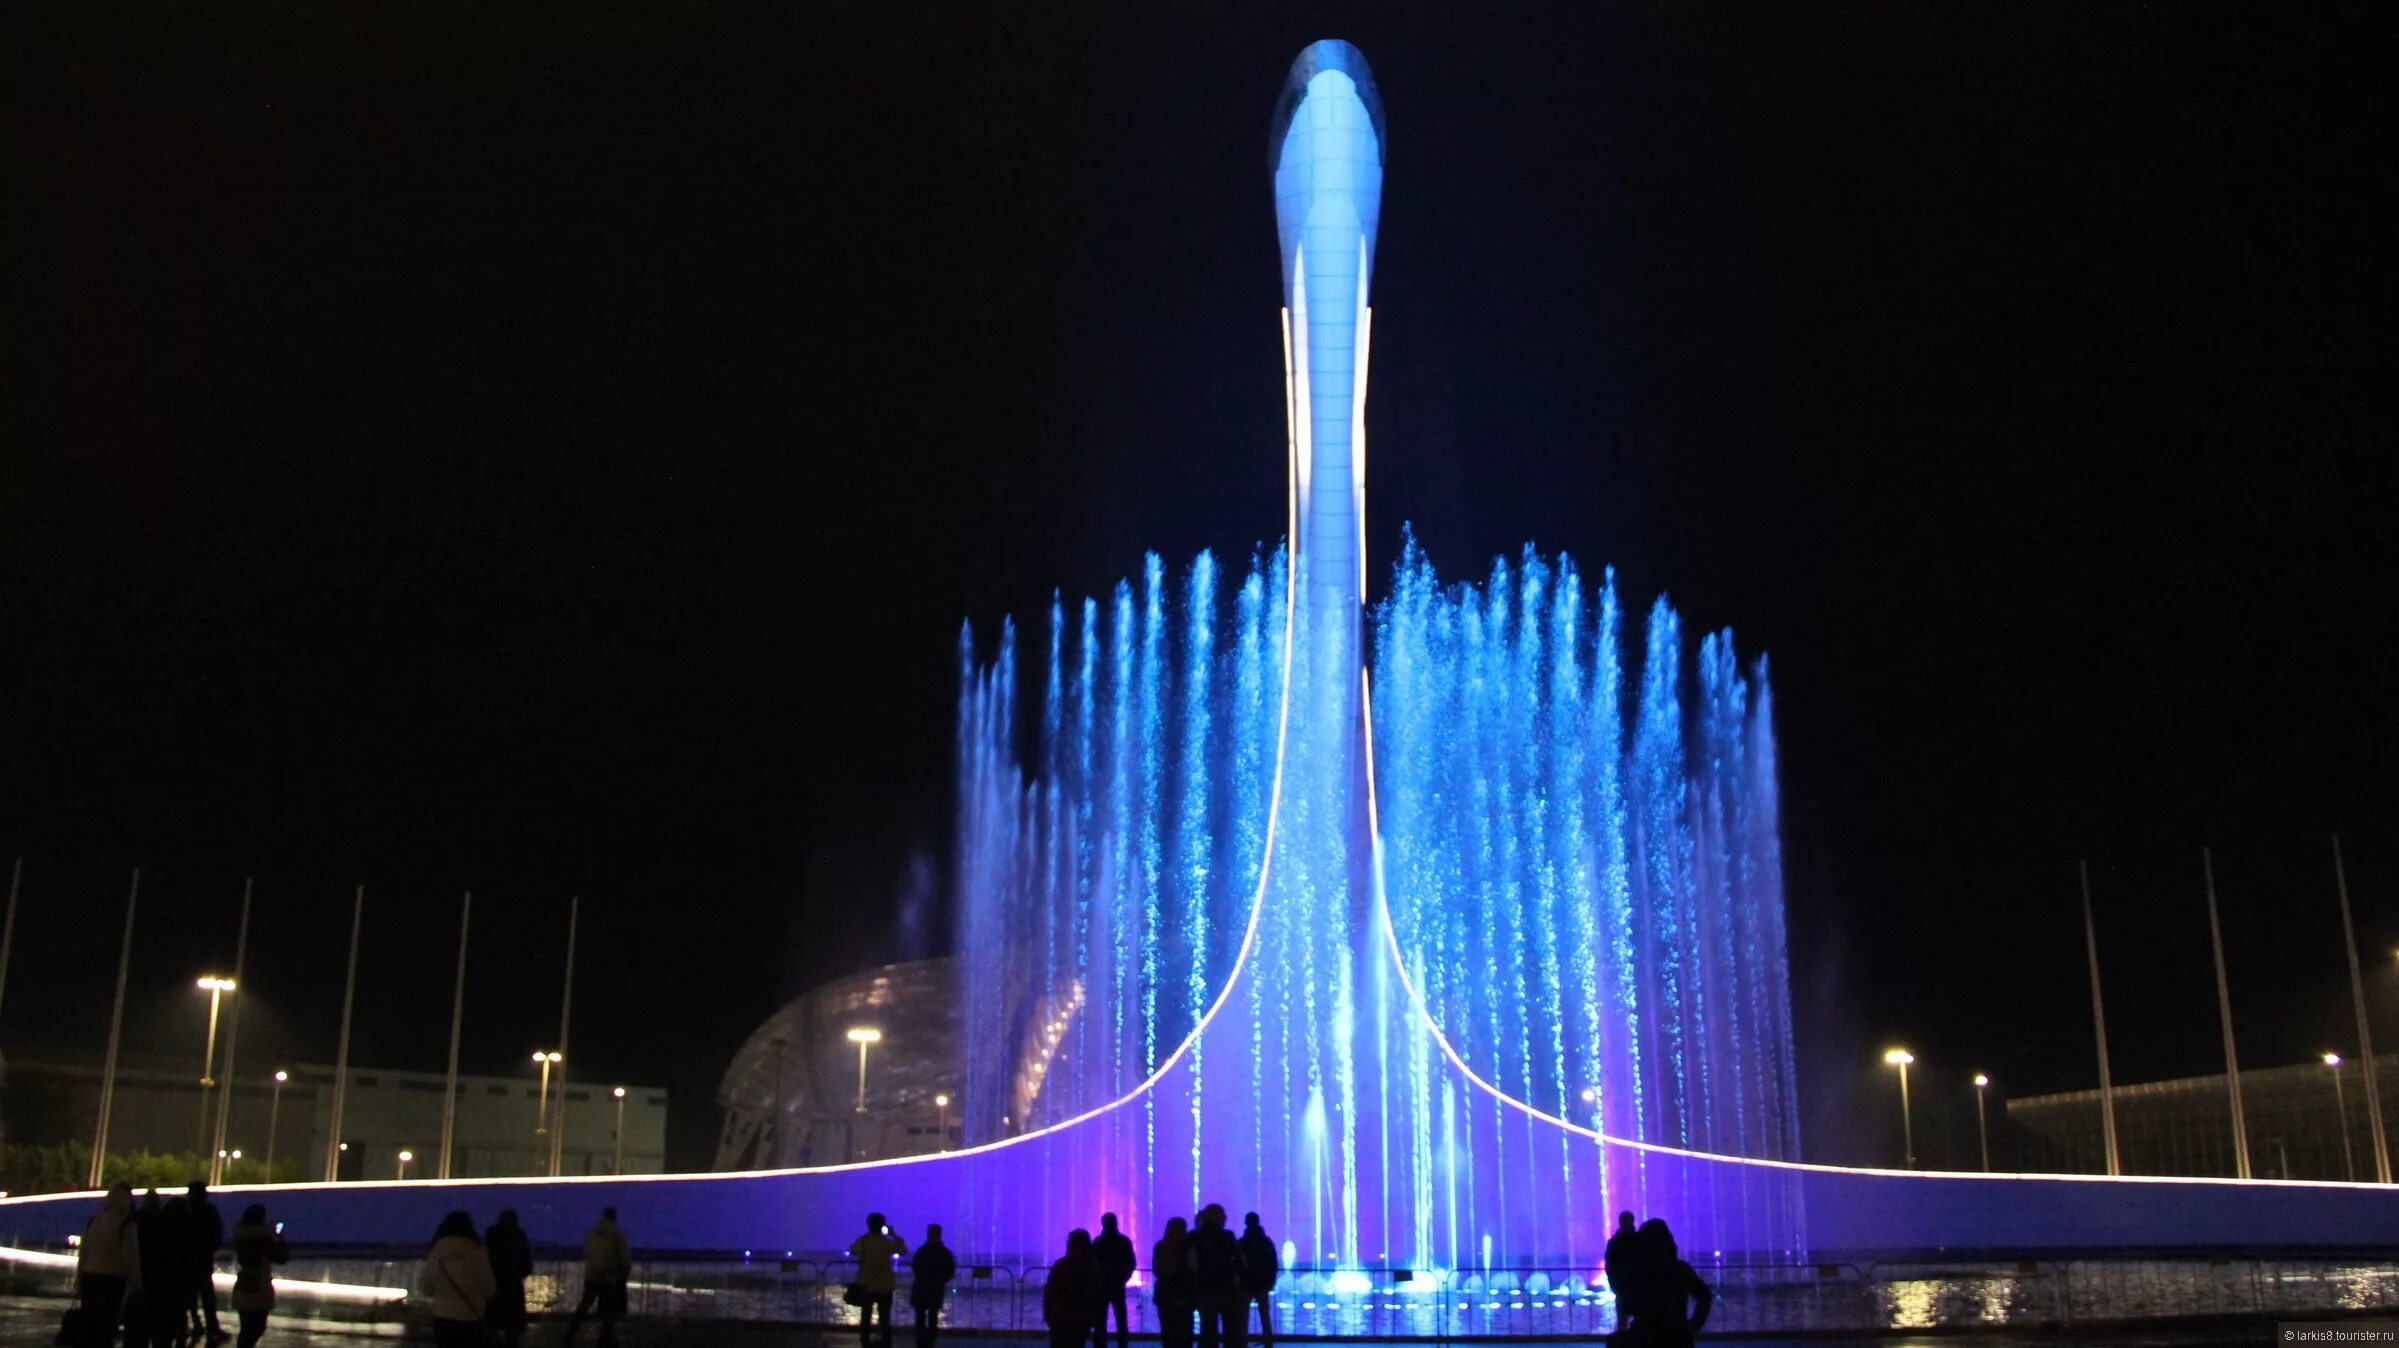 Поющие фонтаны Сочи Олимпийский парк. Поющие фонтаны Сочи Олимпийский парк 2023. Фонтан в Сочи в Олимпийском парке. Поющий фонтан в Сочи в Олимпийском парке. Поющие фонтаны в адлере сочи парк расписание